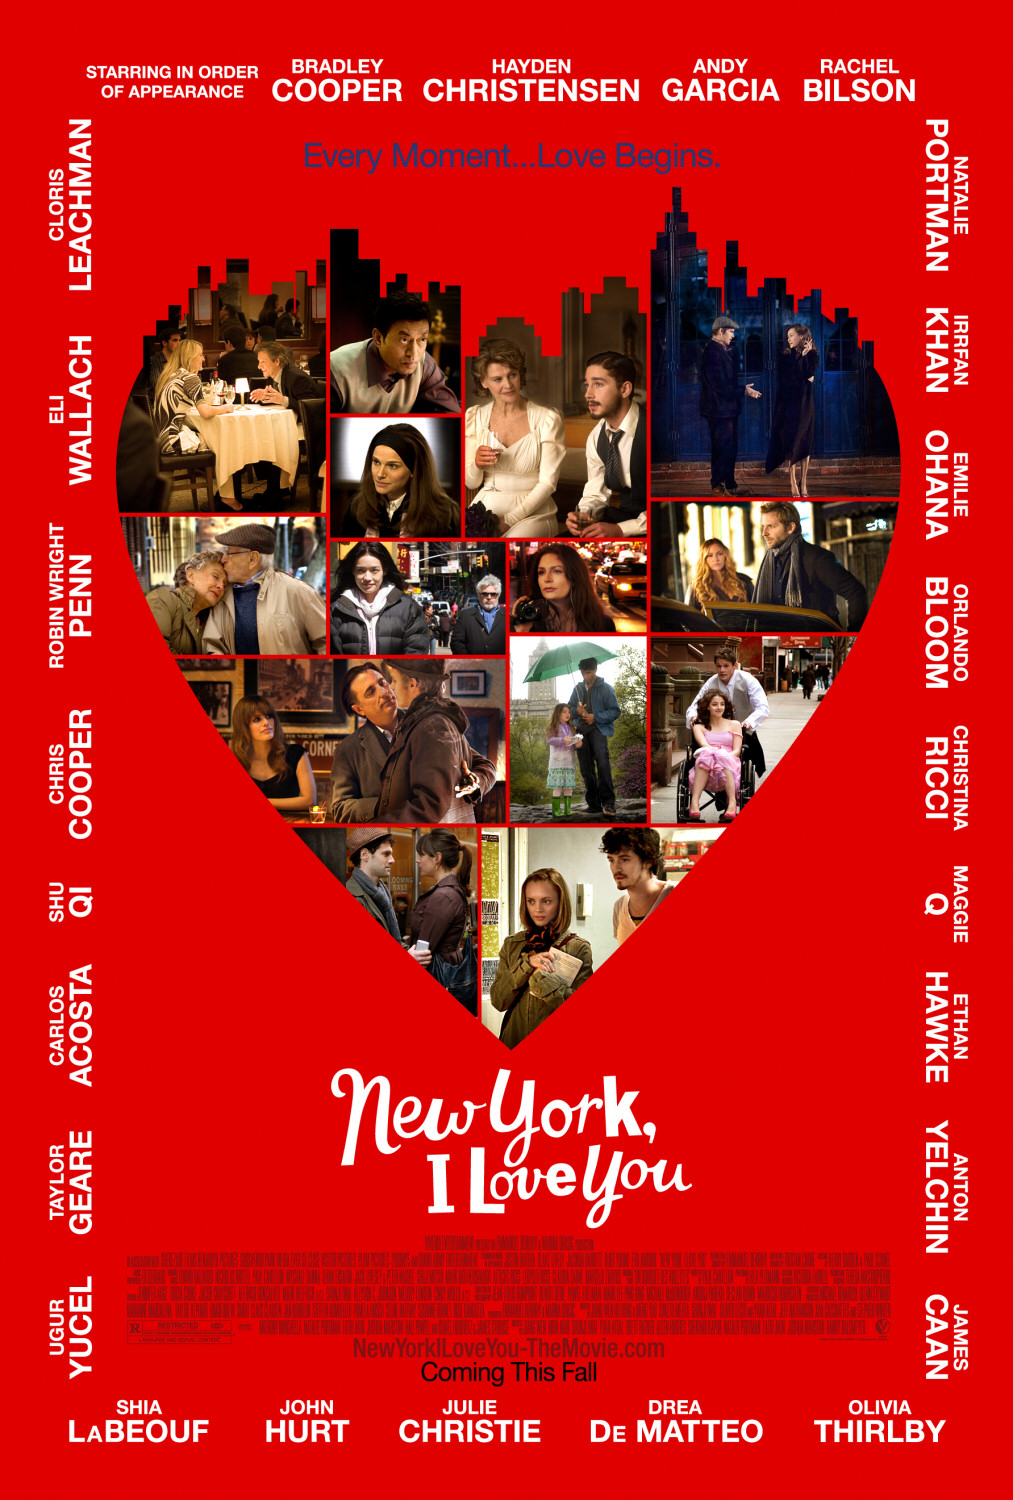 Постер - Нью-Йорк, я люблю тебя: 1013x1500 / 478 Кб